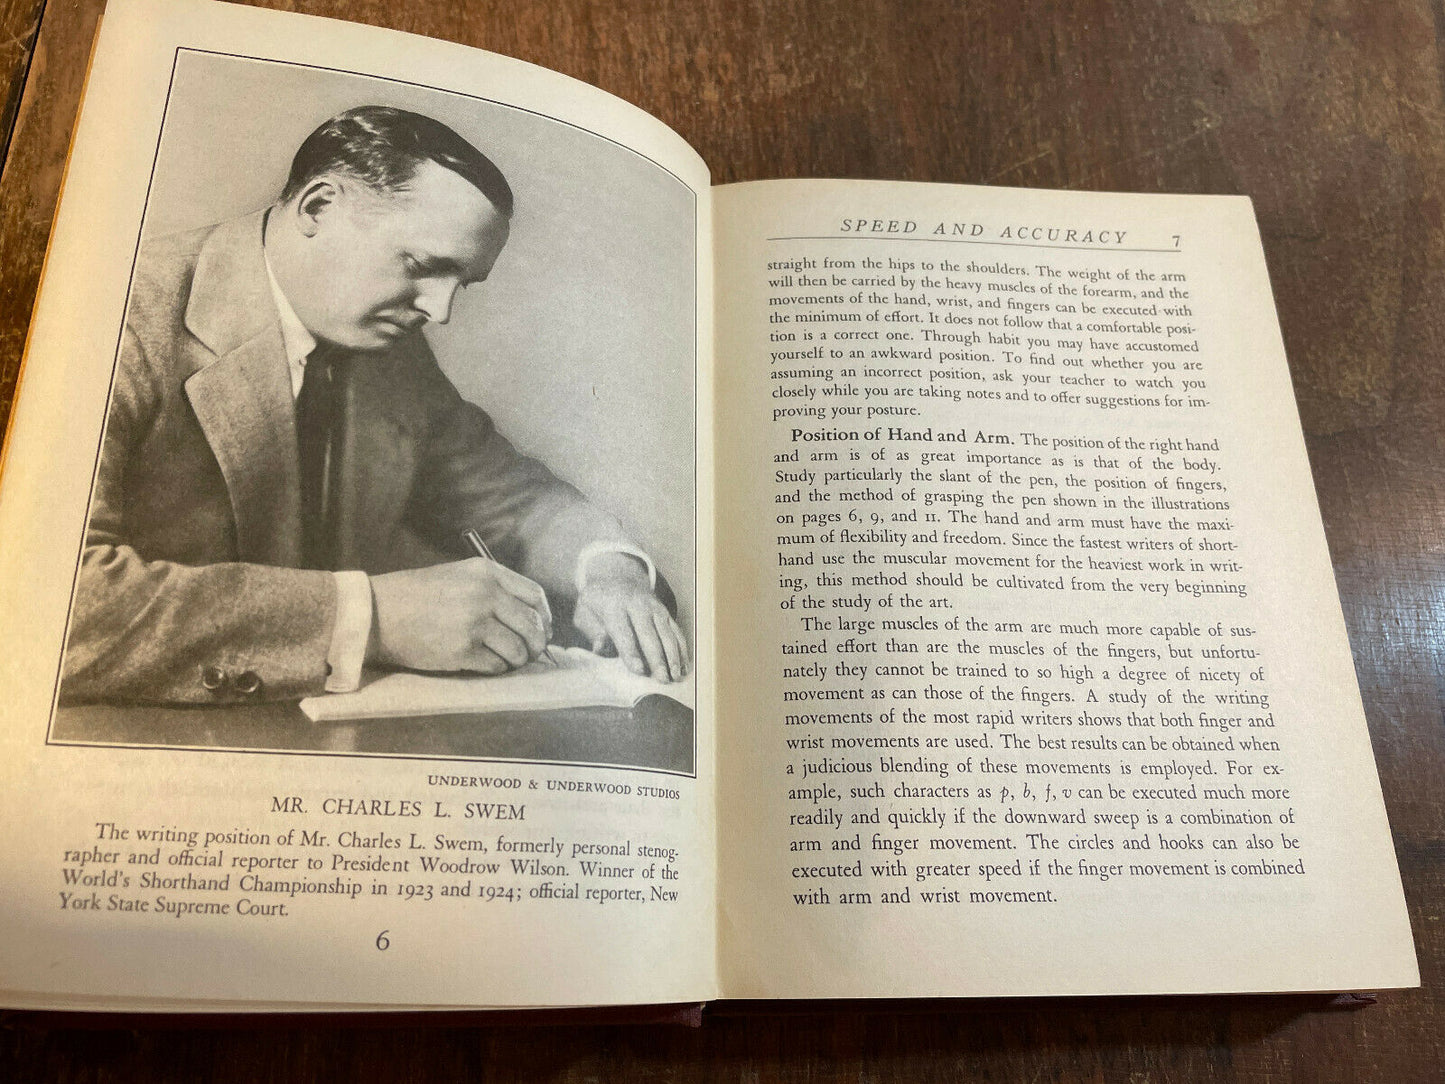 Gregg speed studies Anniversary Edition Bryant & Stratton College 1929 (W3)